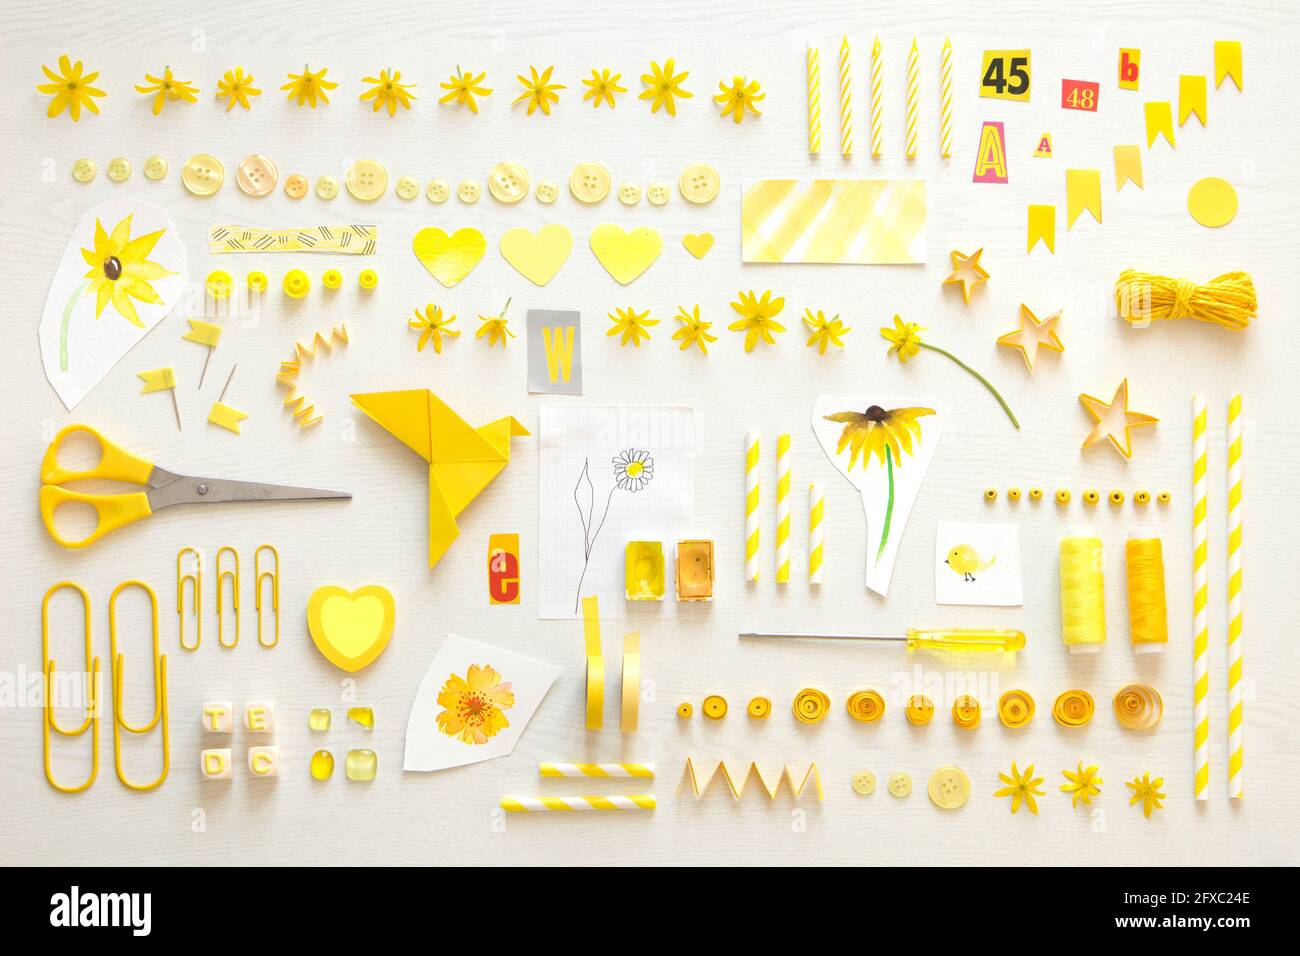 Sammlung von gelben Gegenständen einschließlich Blumenköpfen, Nähsachen und Bürobedarf Stockfoto